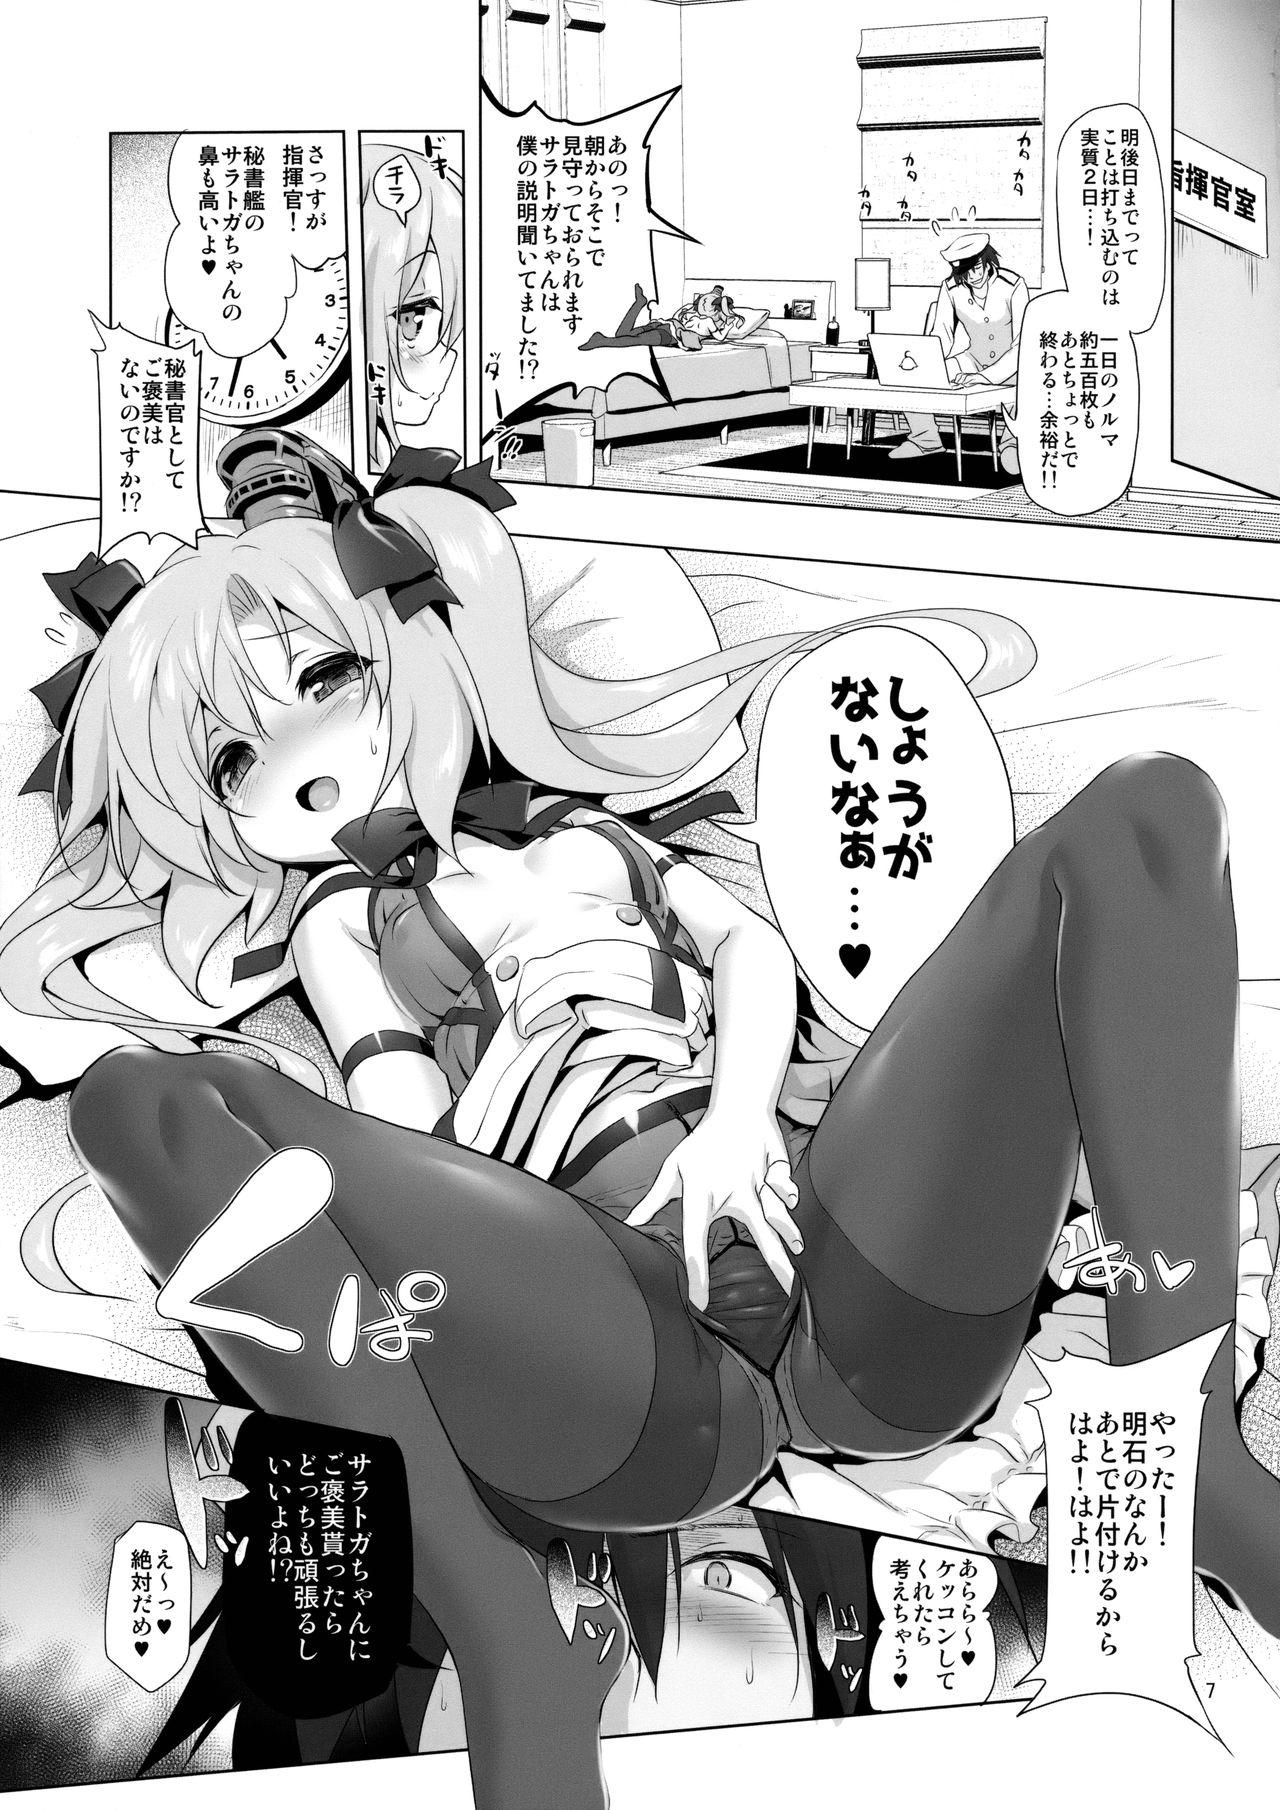 Nasty Free Porn Saratoga-chan no Itazura Daisenryaku!? - Azur lane Kissing - Page 6